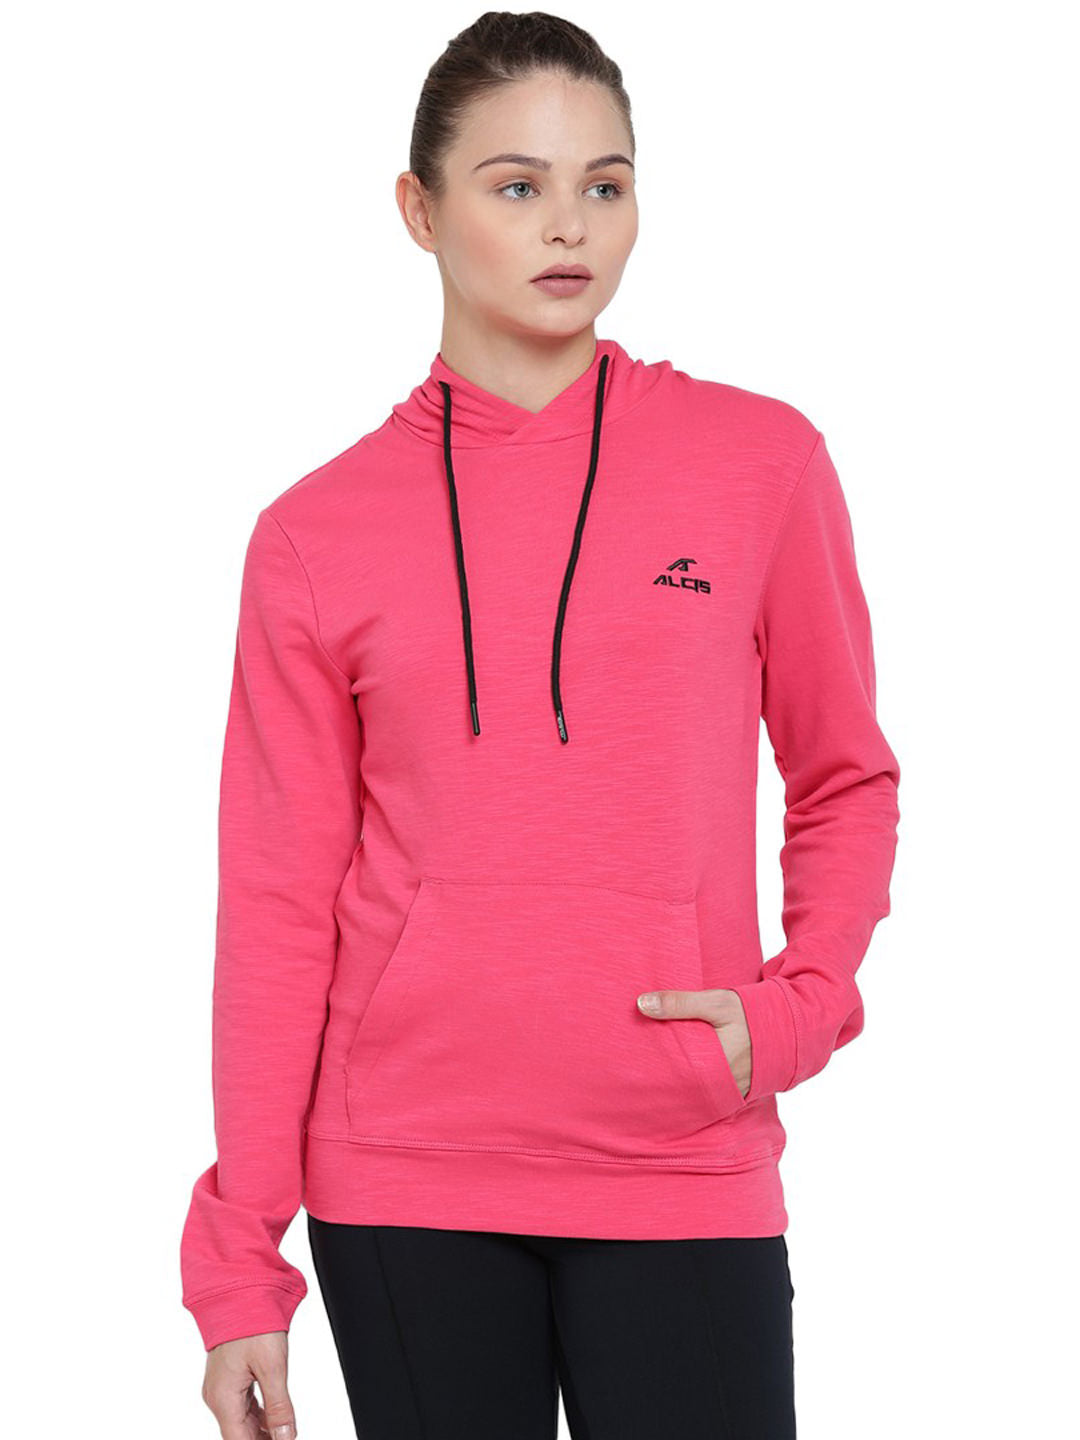 Alcis Men Pink Solid Hooded Sweatshirt 188WSS248 188WSS248-S